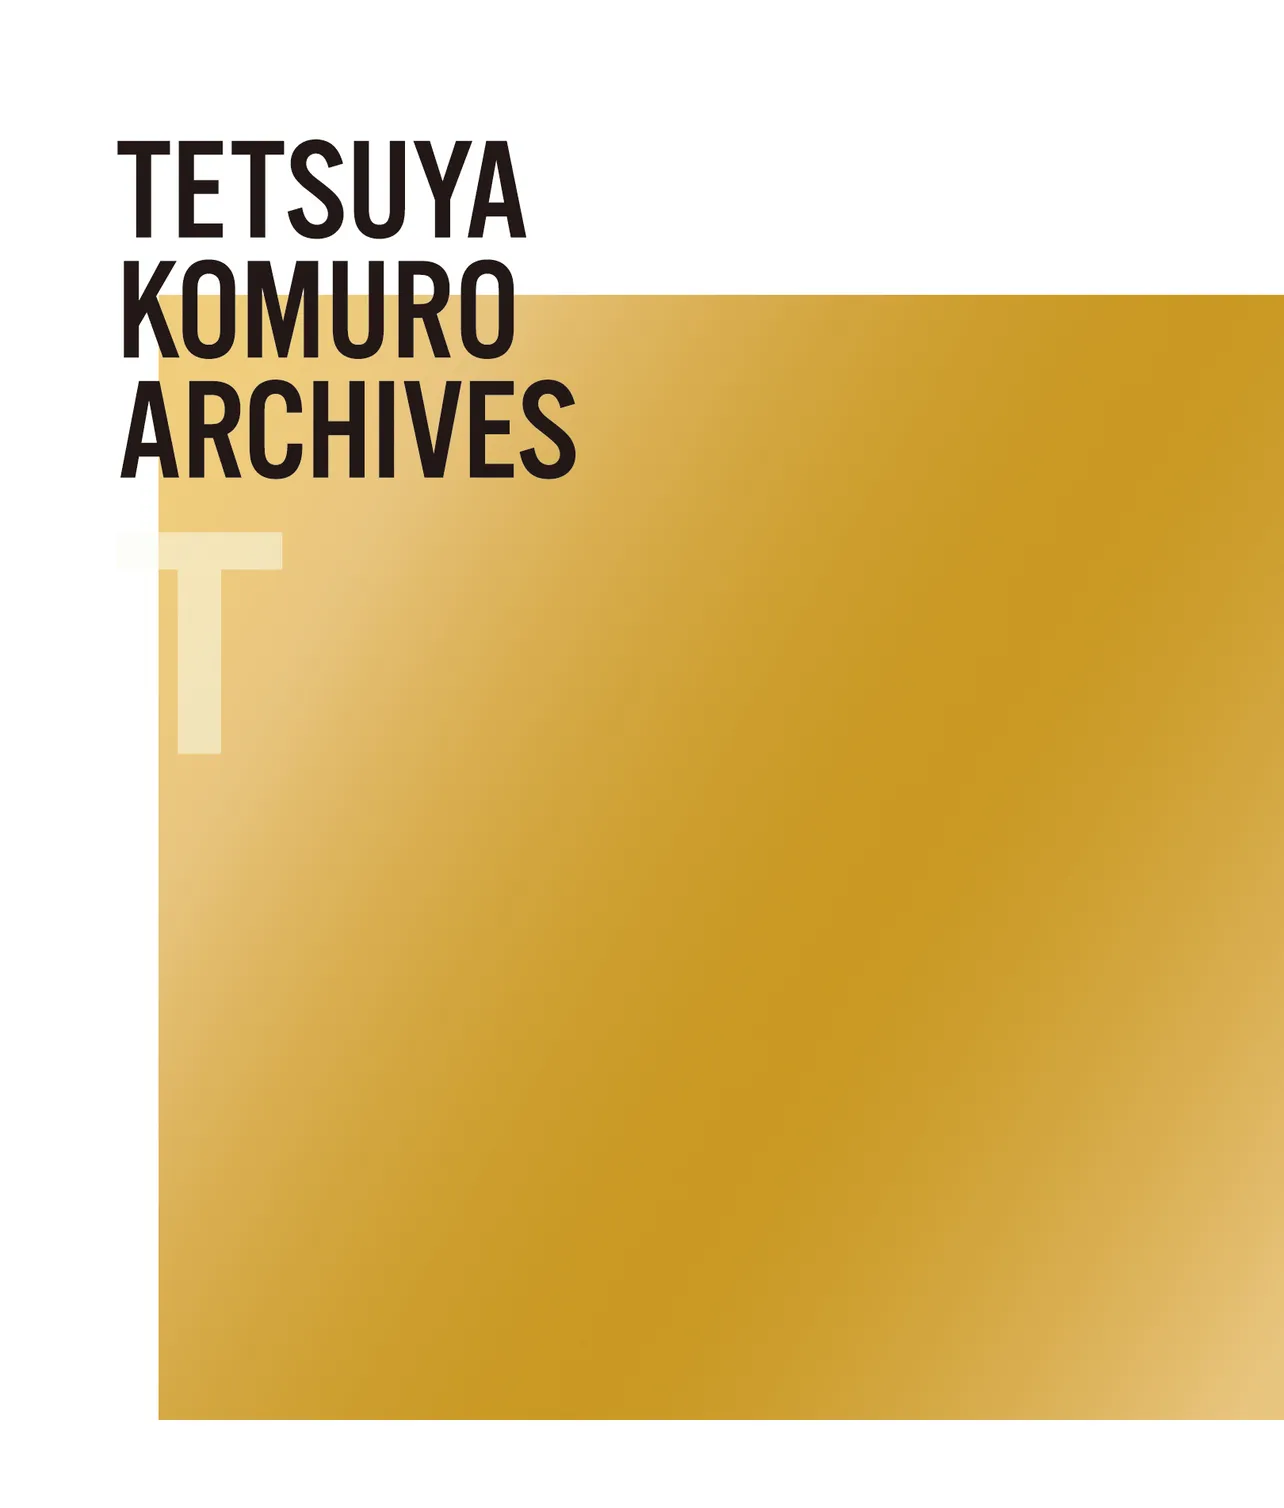 【写真を見る】「TETSUYA KOMURO ARCHIVES "T"」(初回「T盤」ゴールドジャケット仕様)ジャケット